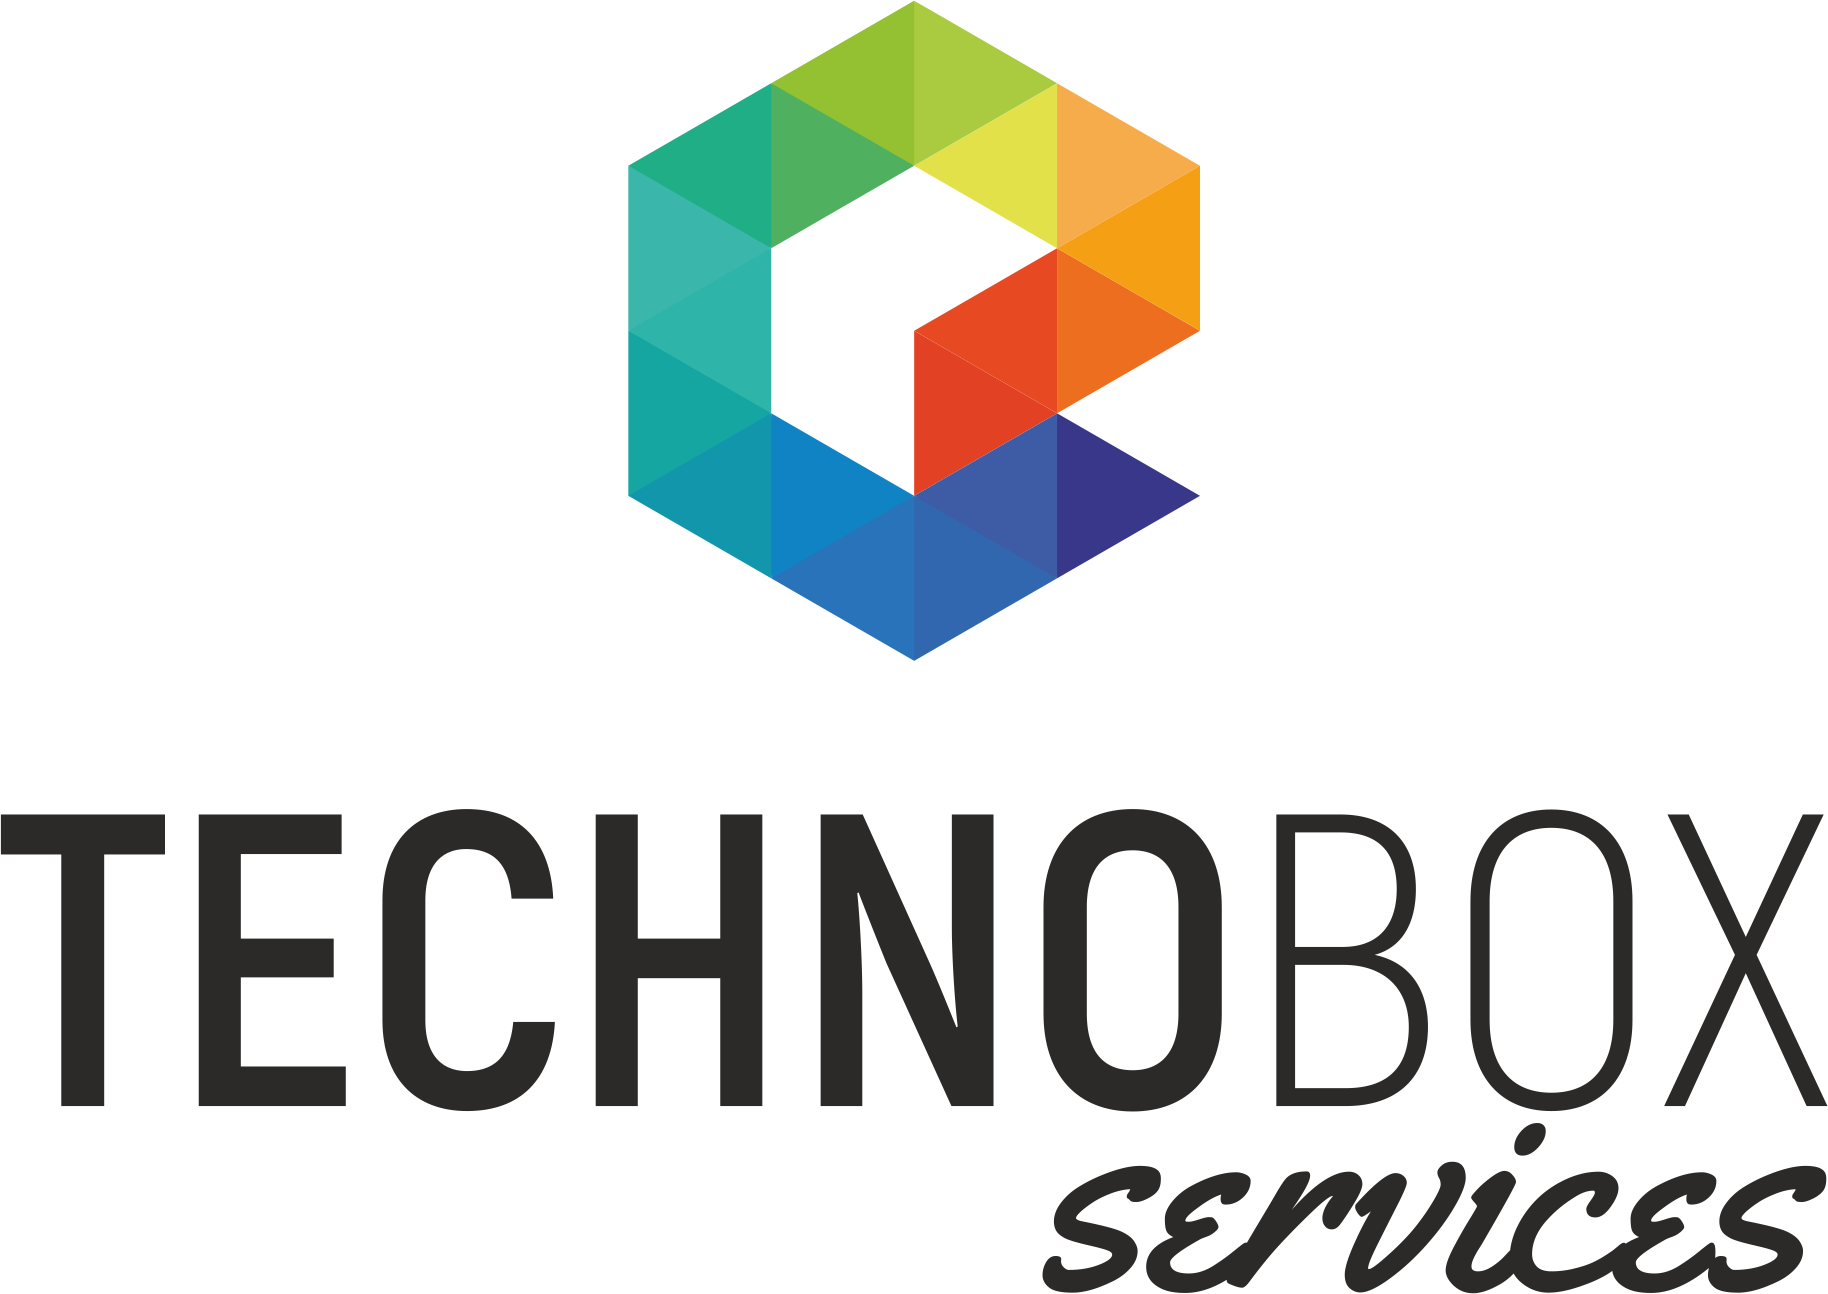 Techno box services